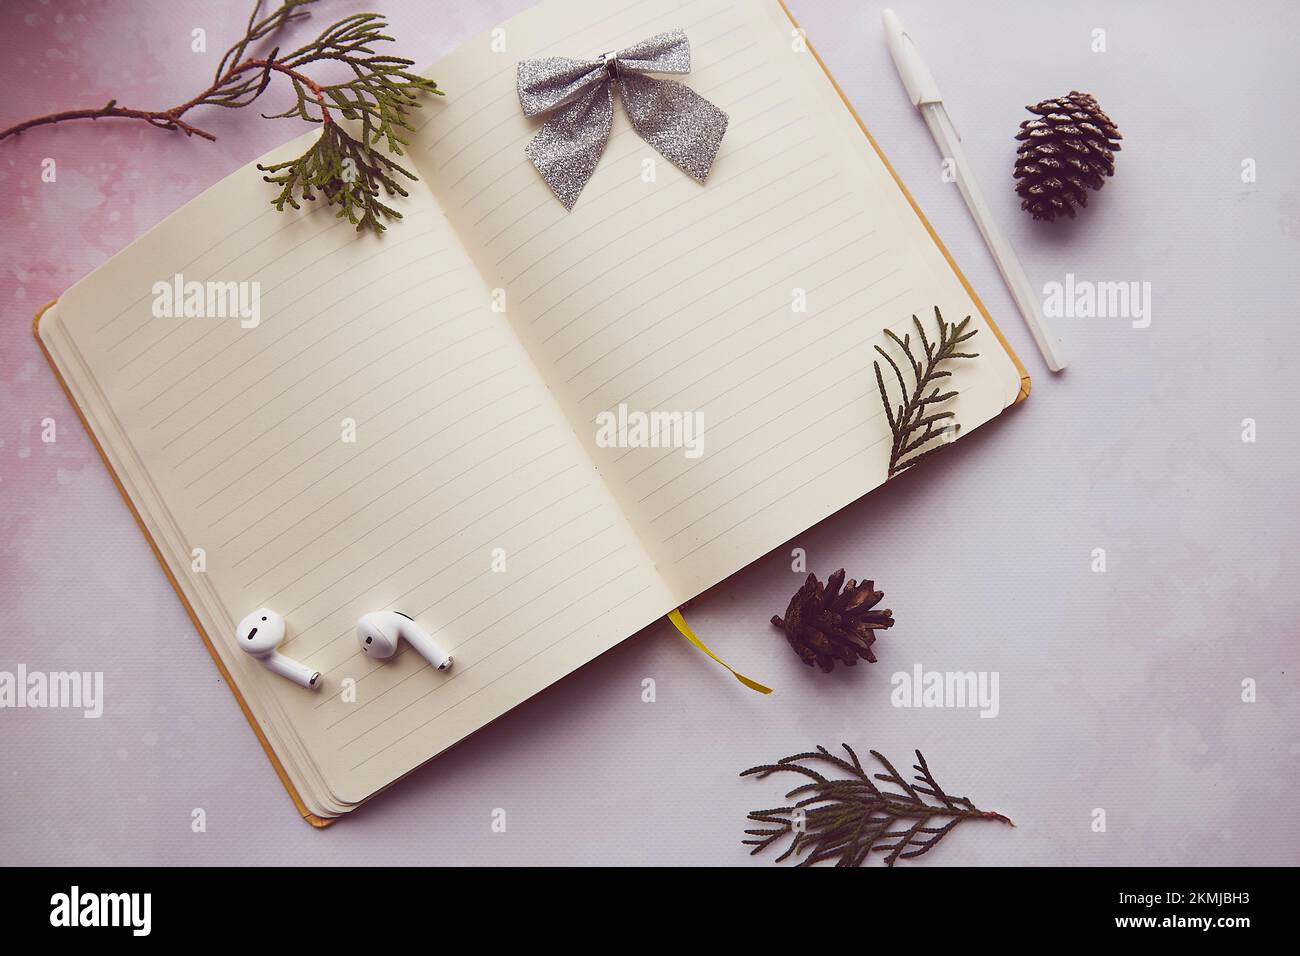 Il notepad d'epoca di stagione è un mock up con decorazioni invernali, auricolari. Risoluzione di nuovo anno, nuovo inizio ed elenco degli obiettivi lifestyle. Foto Stock